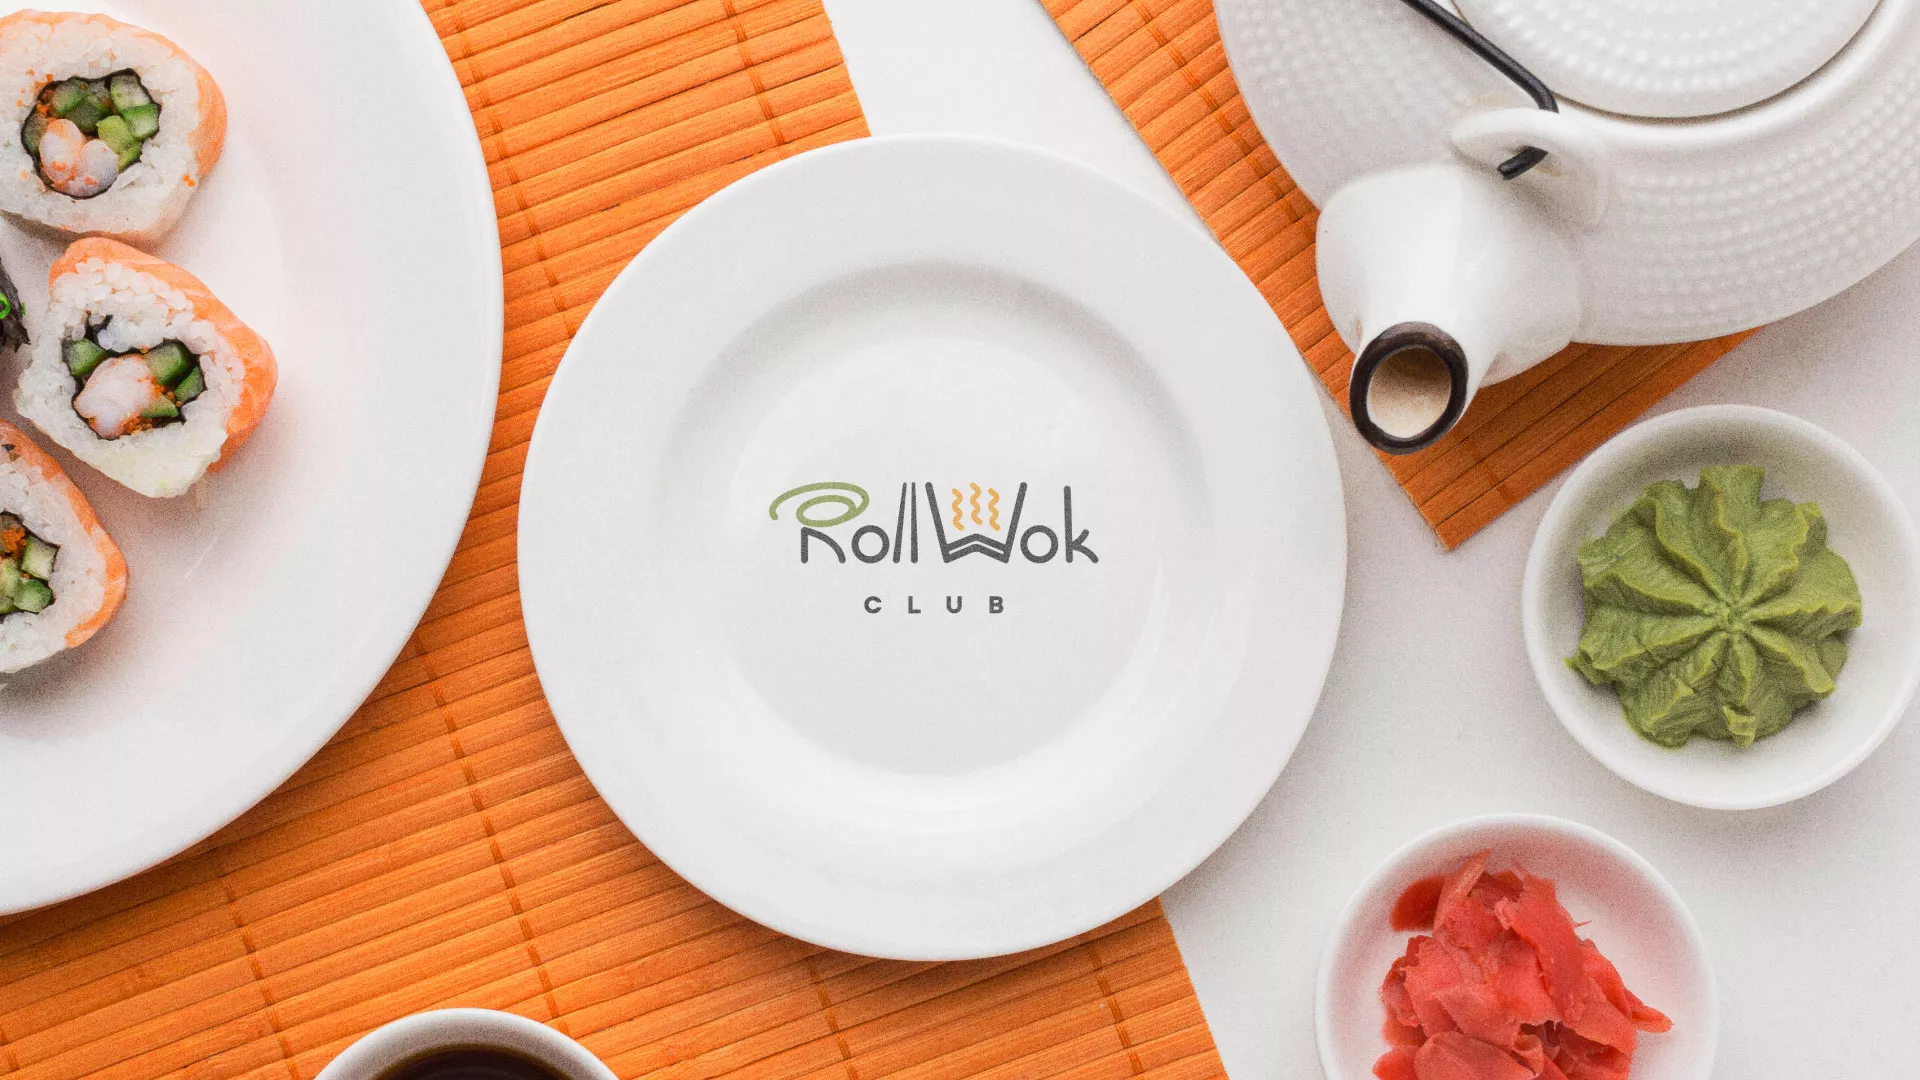 Разработка логотипа и фирменного стиля суши-бара «Roll Wok Club» в Могоче